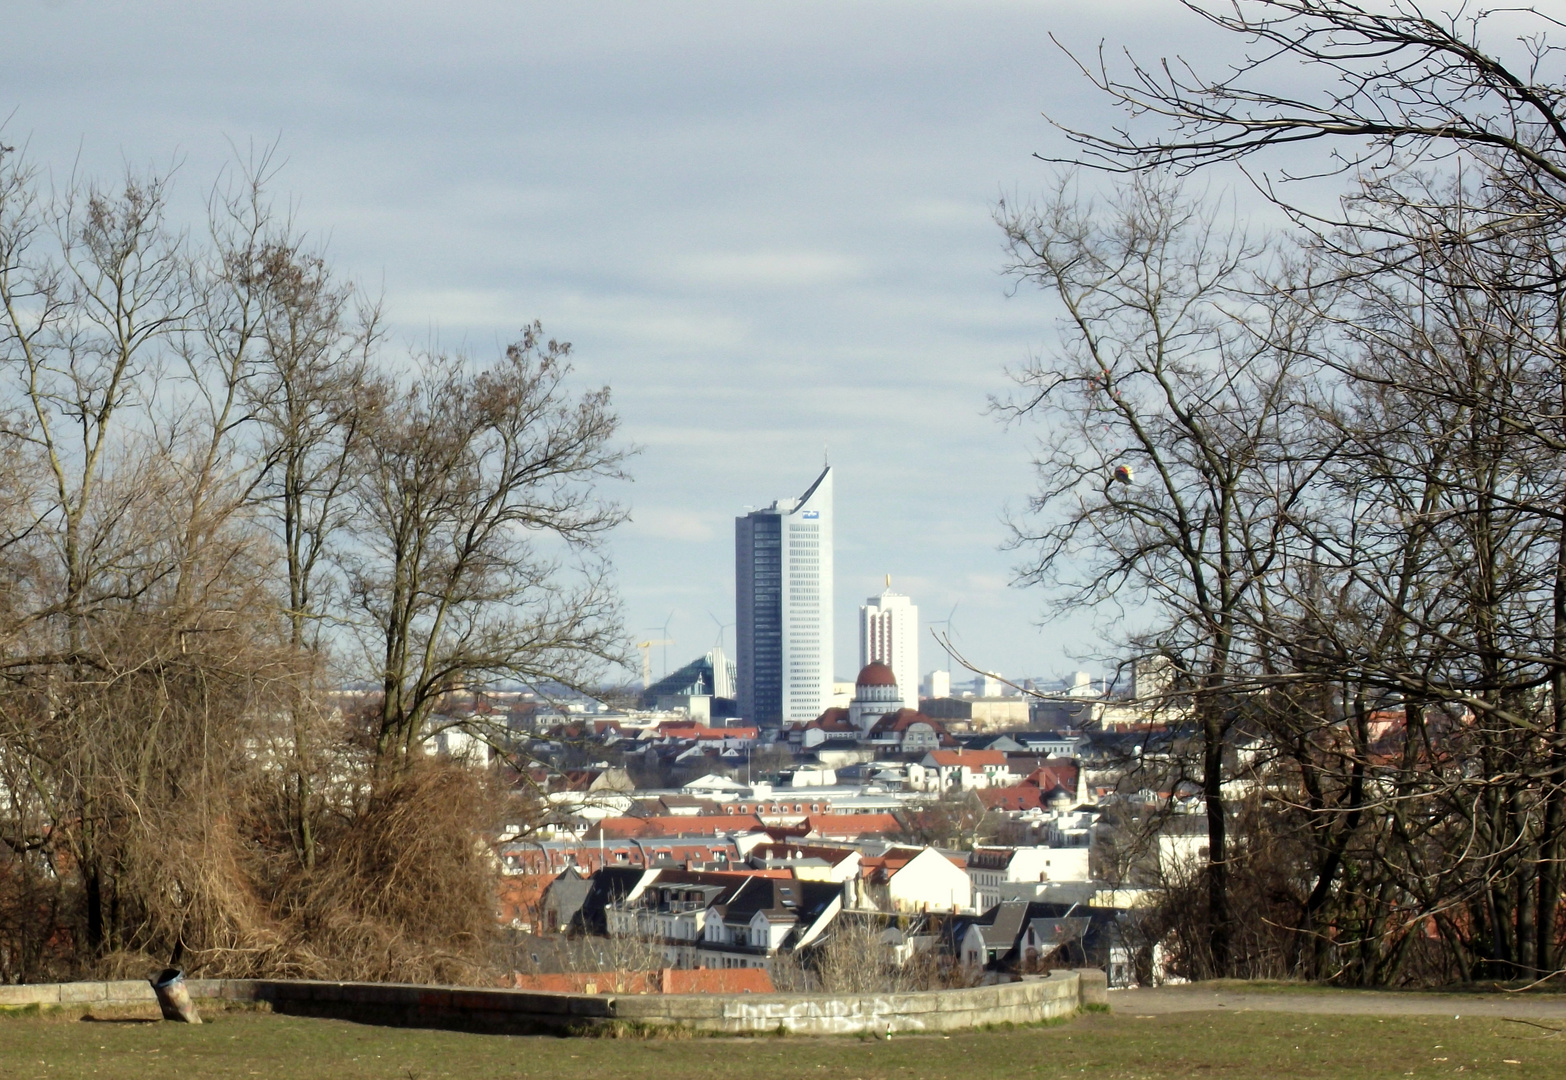 Stadtansicht von Leipzig